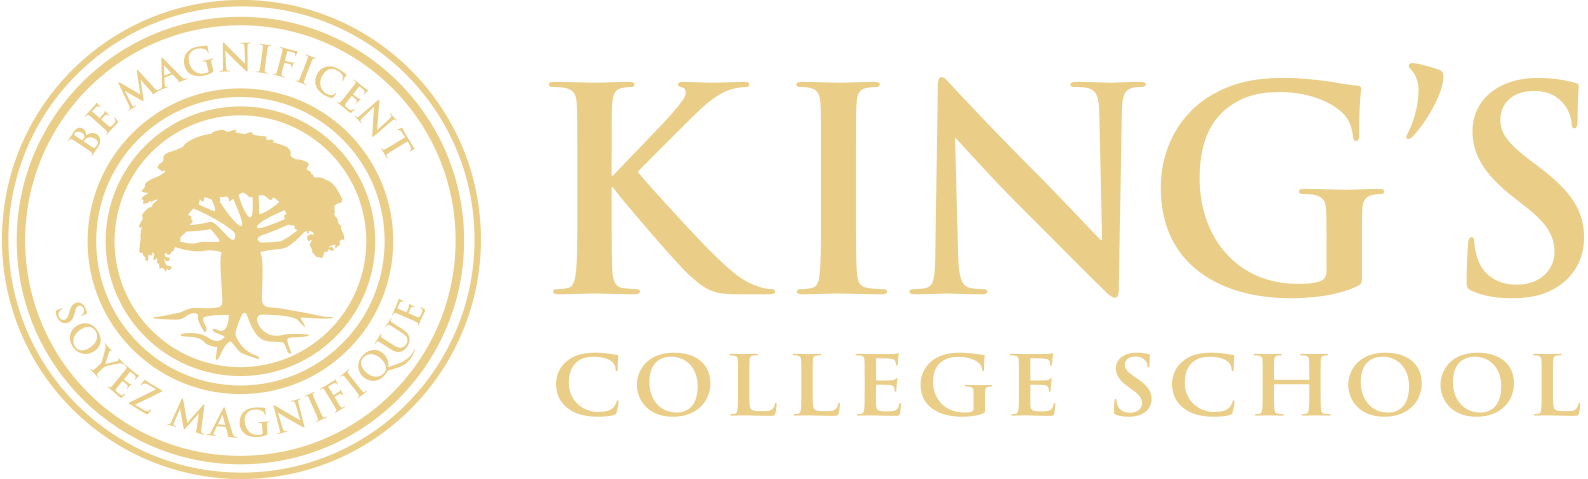 King's College School